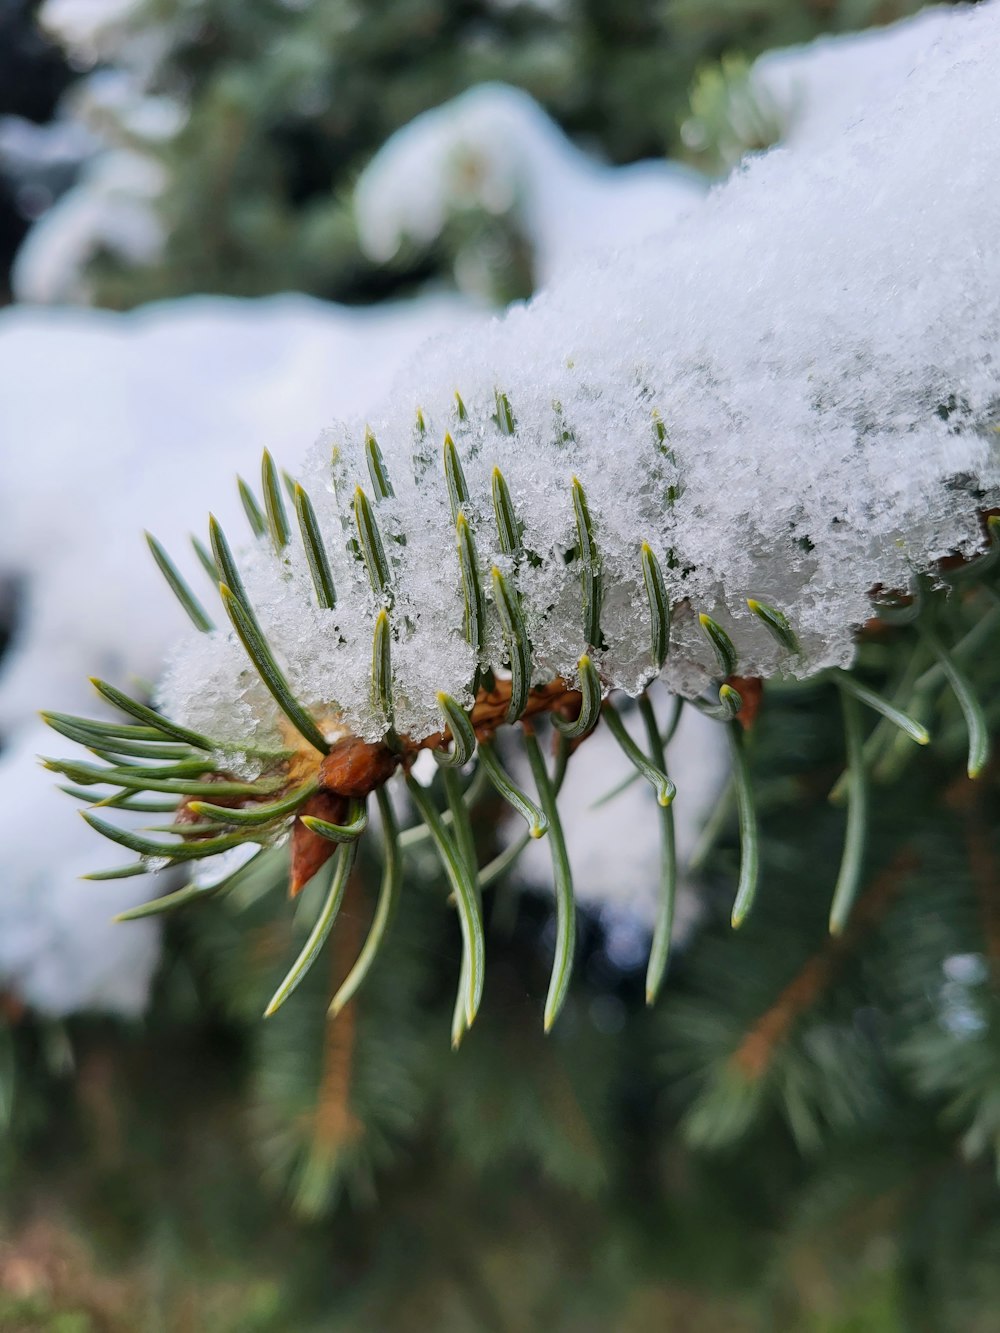 um ramo de um pinheiro coberto de neve